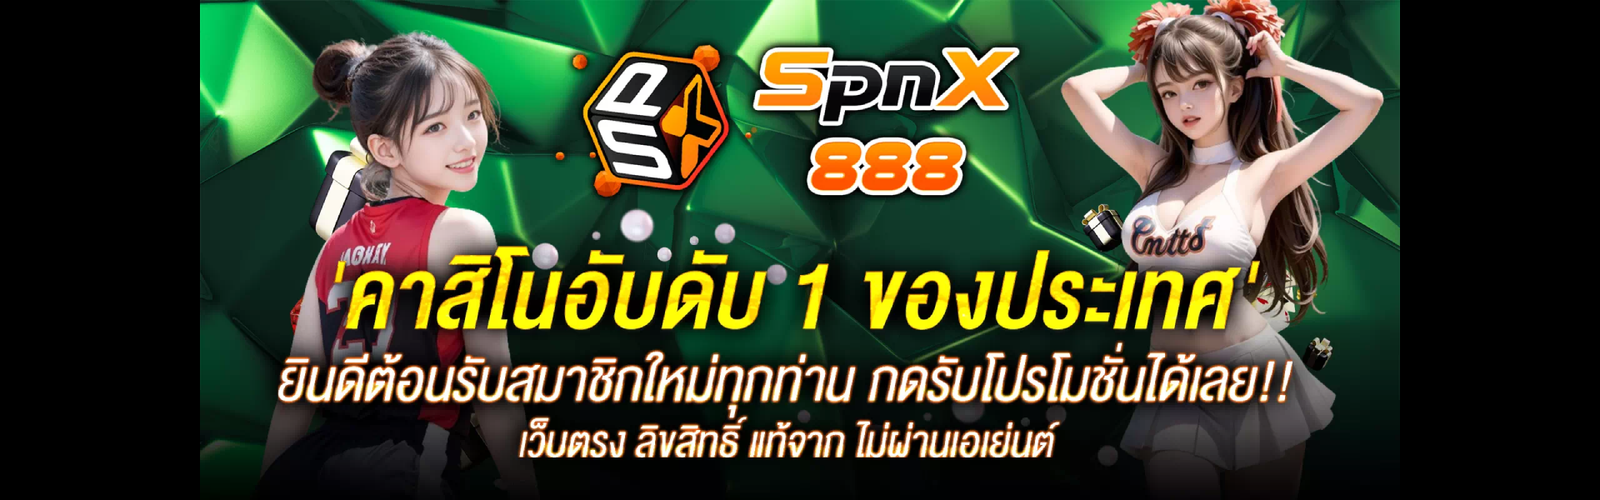 spinix888.casino คาสิโนออนไลน์ อันดับ 1